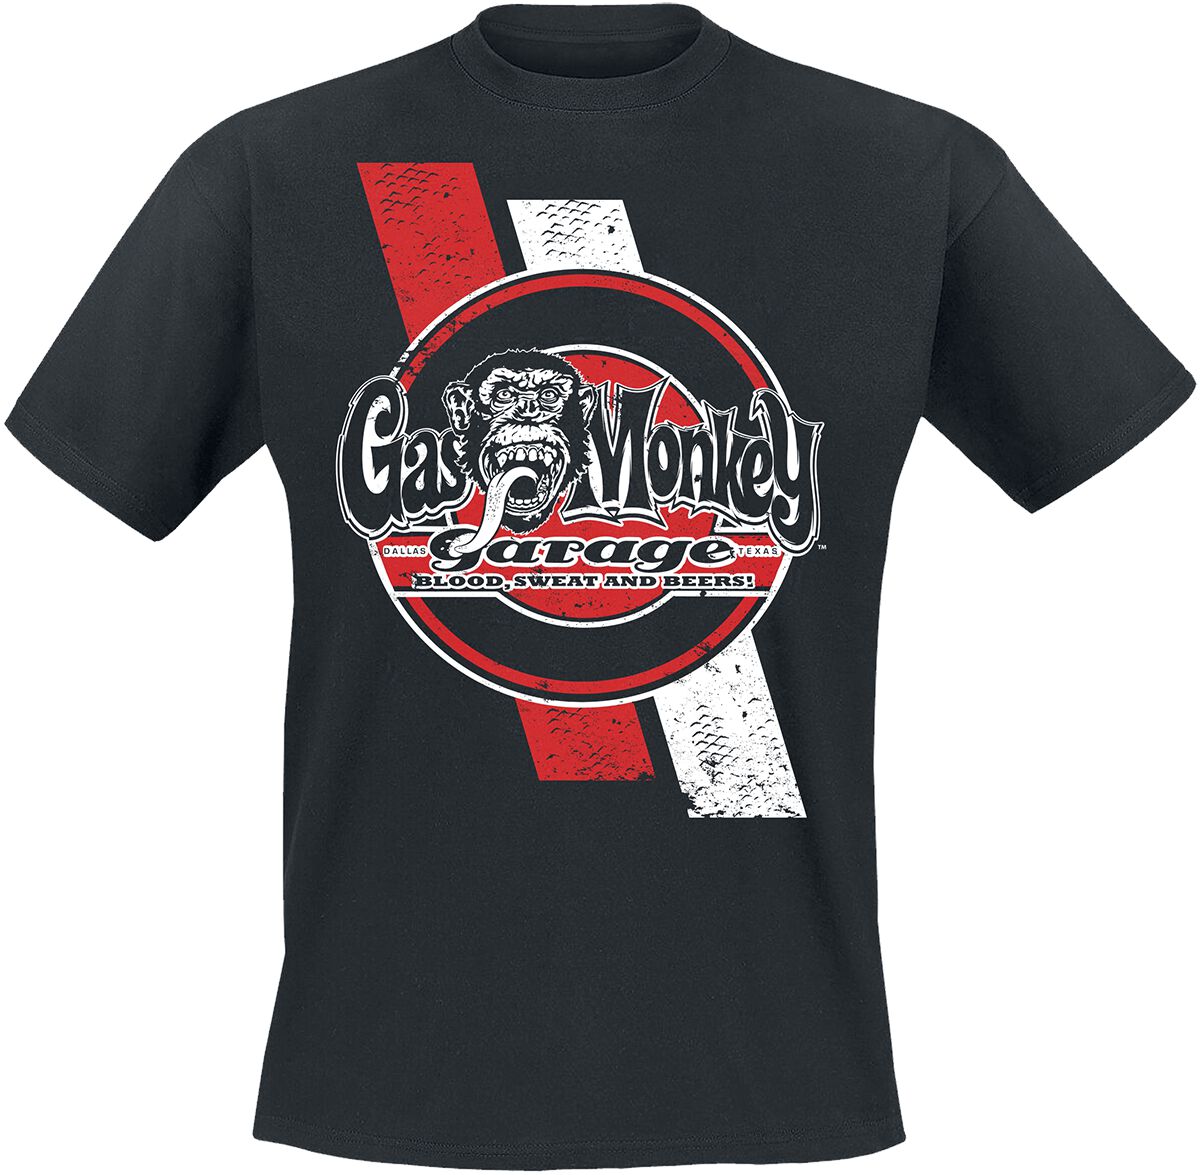 Gas Monkey Garage T-Shirt - Red And White Stripes - S bis XXL - für Männer - Größe XL - schwarz  - Lizenzierter Fanartikel